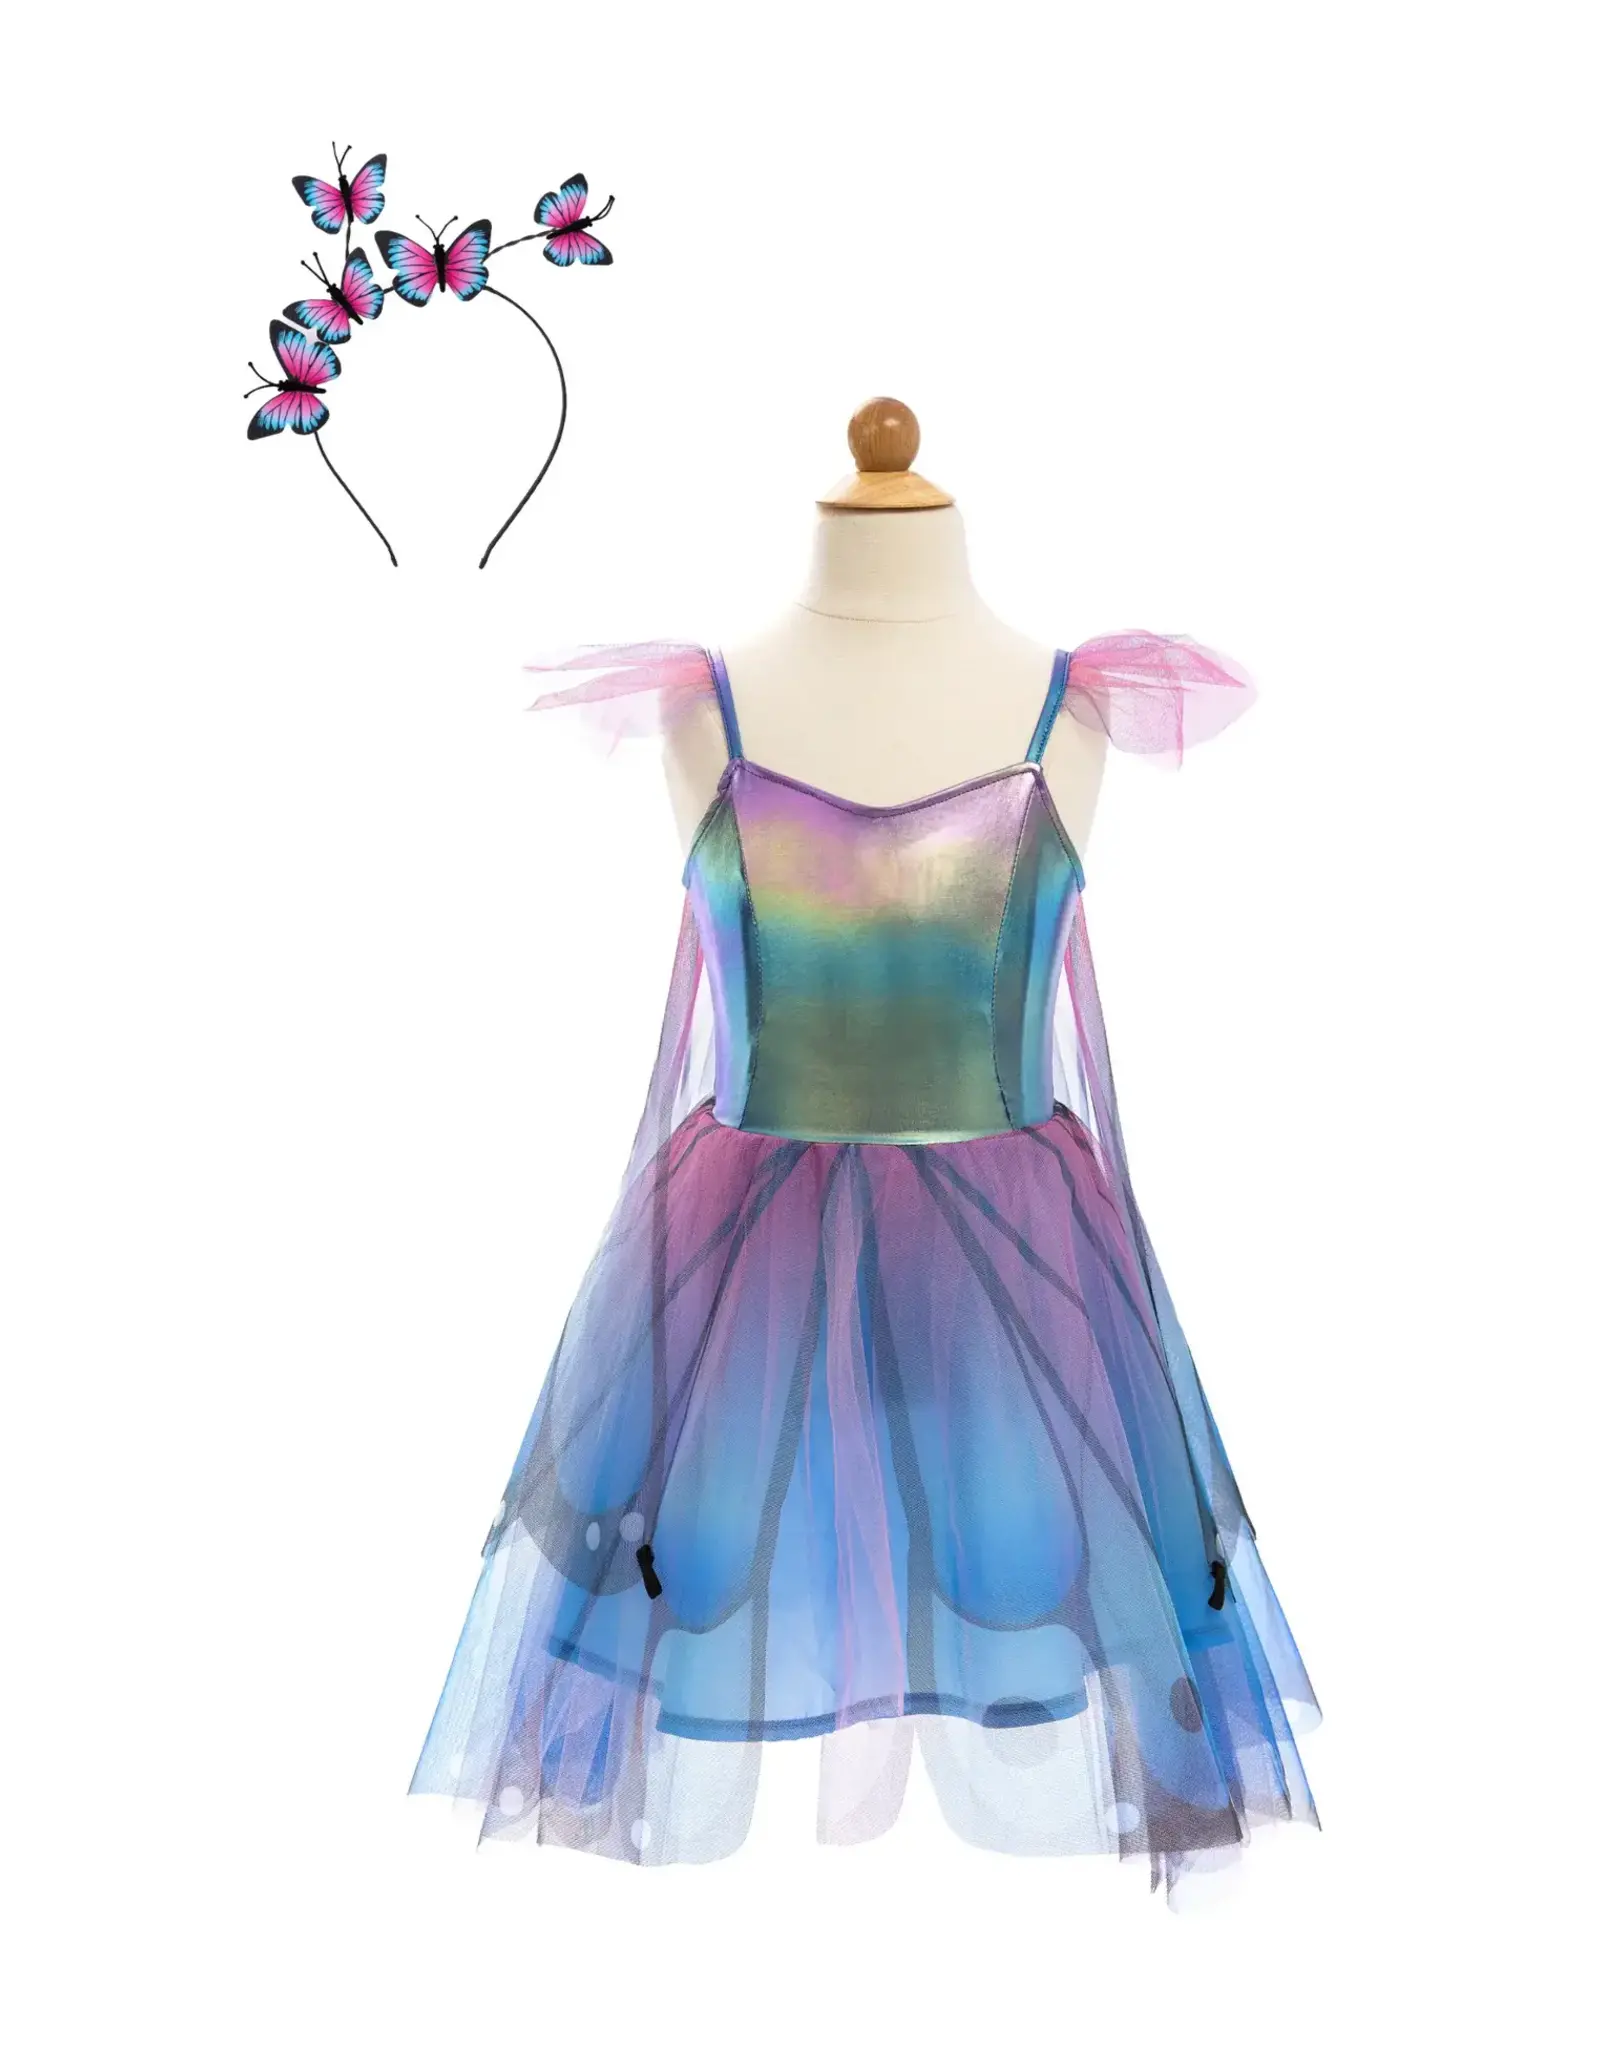 Great Pretenders Blue Butterfly Twirl Dress with Wings & Headband, Size 5/6